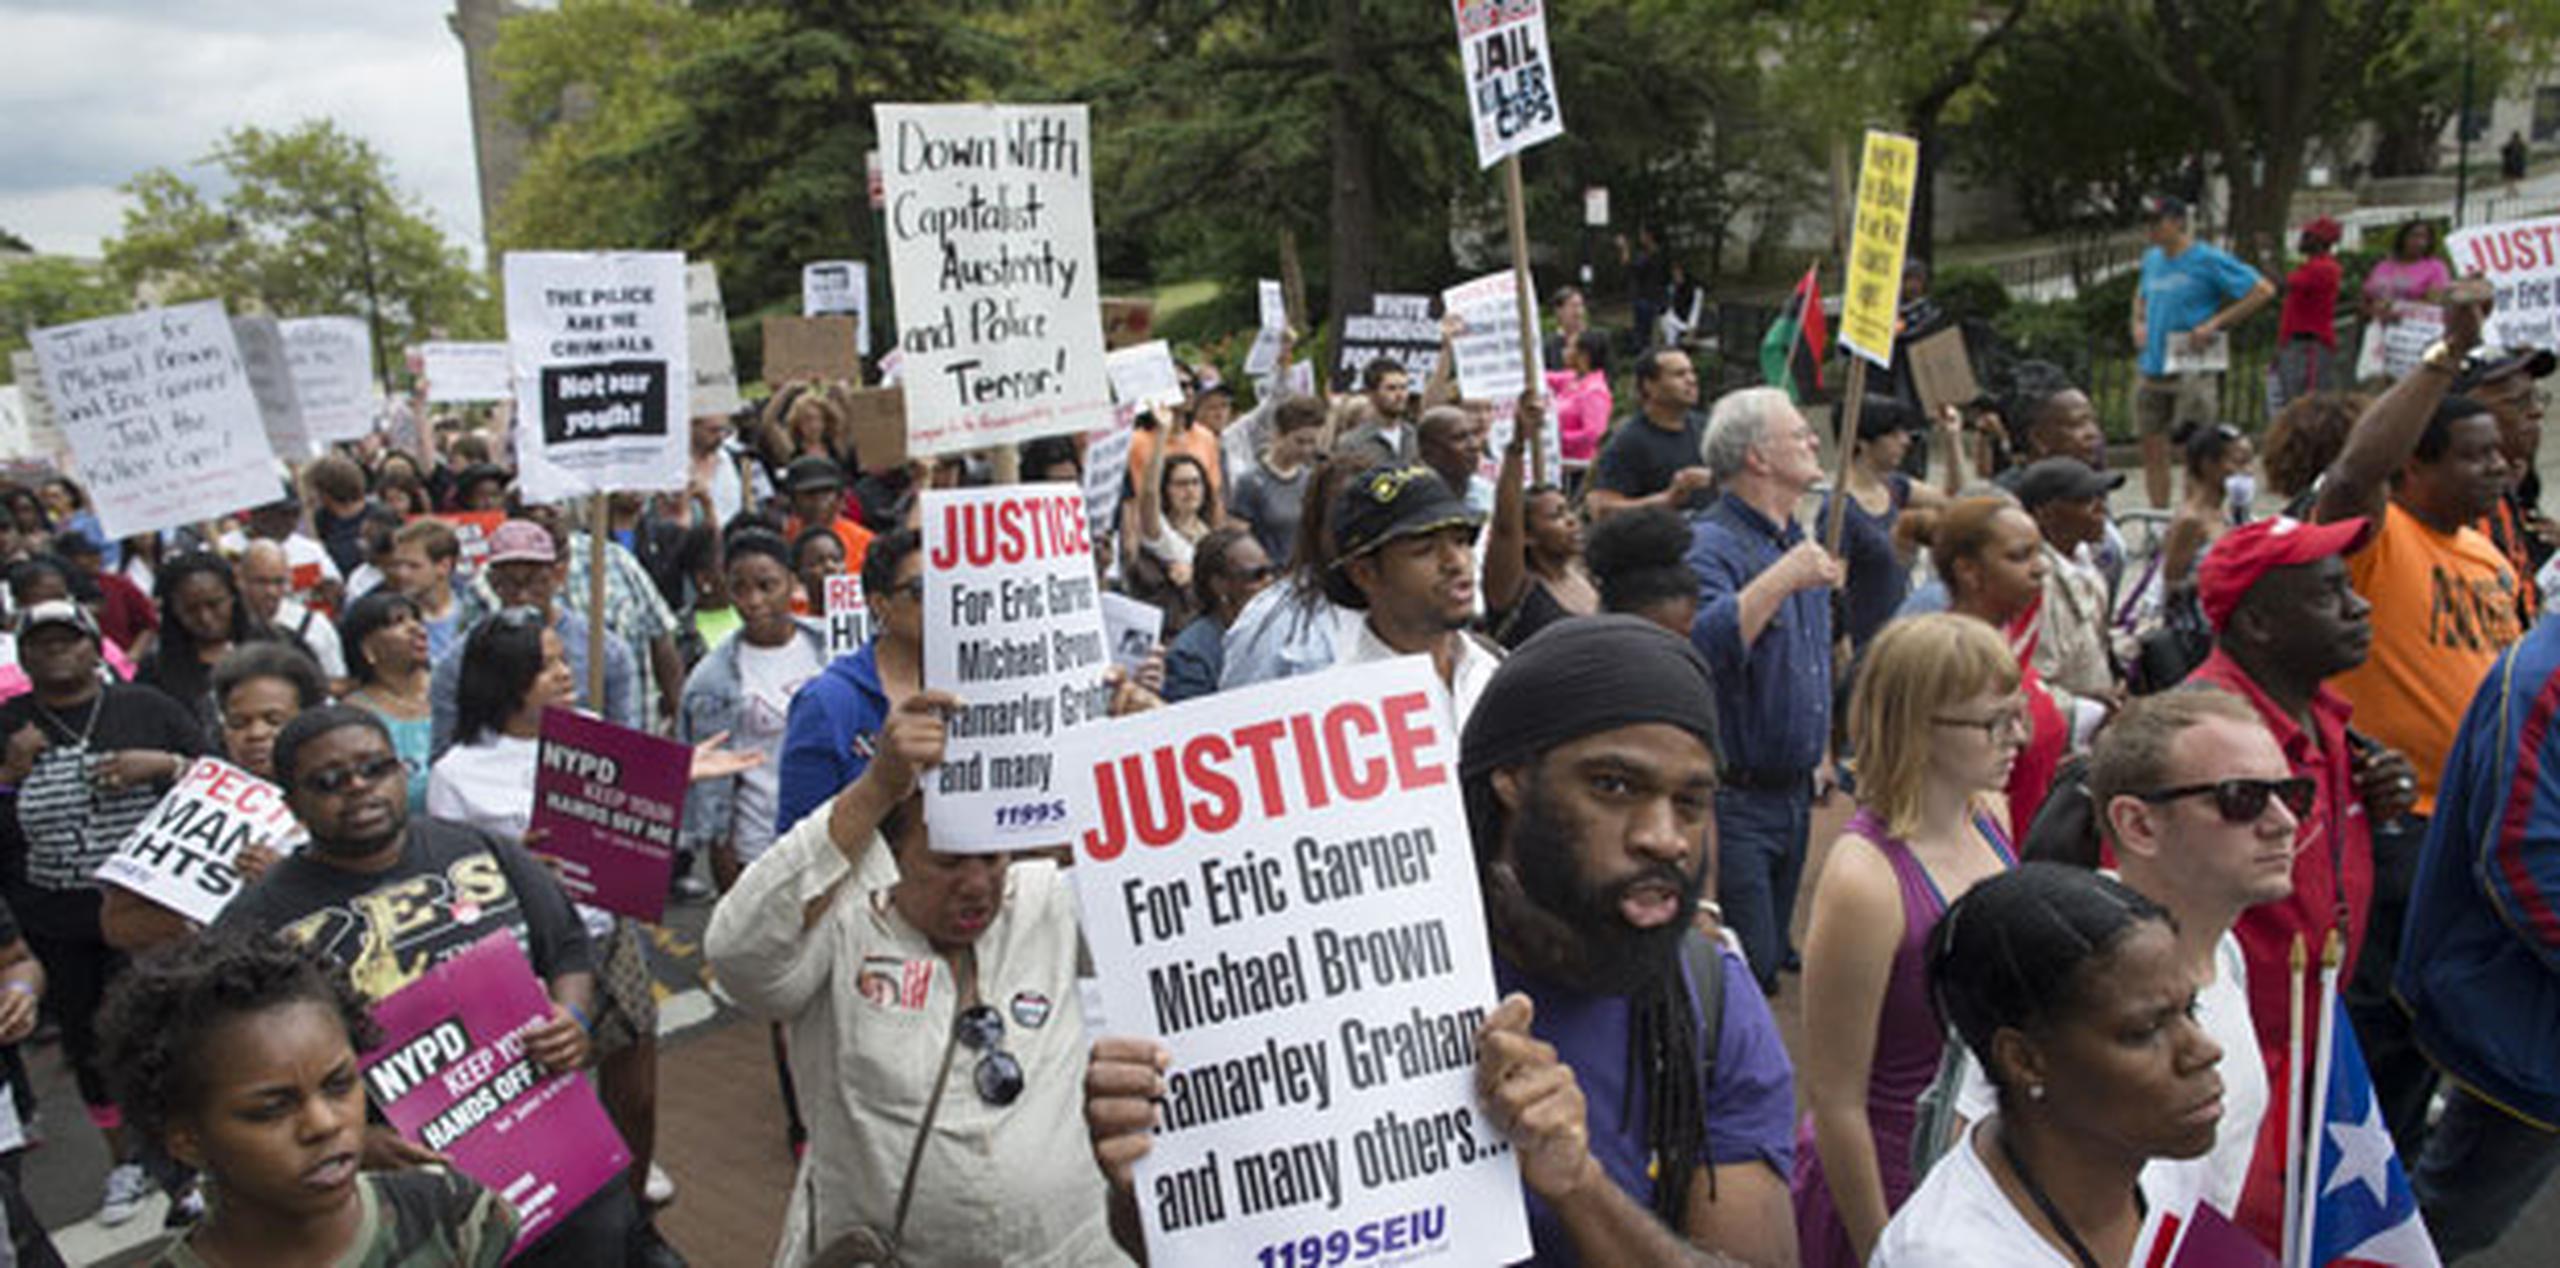 El acto comenzó en la intersección donde la policía enfrentó a Garner, desde donde se inició la marcha detrás de un cartelón que decía "No volveremos atrás. Marcha por la justicia". (AP)